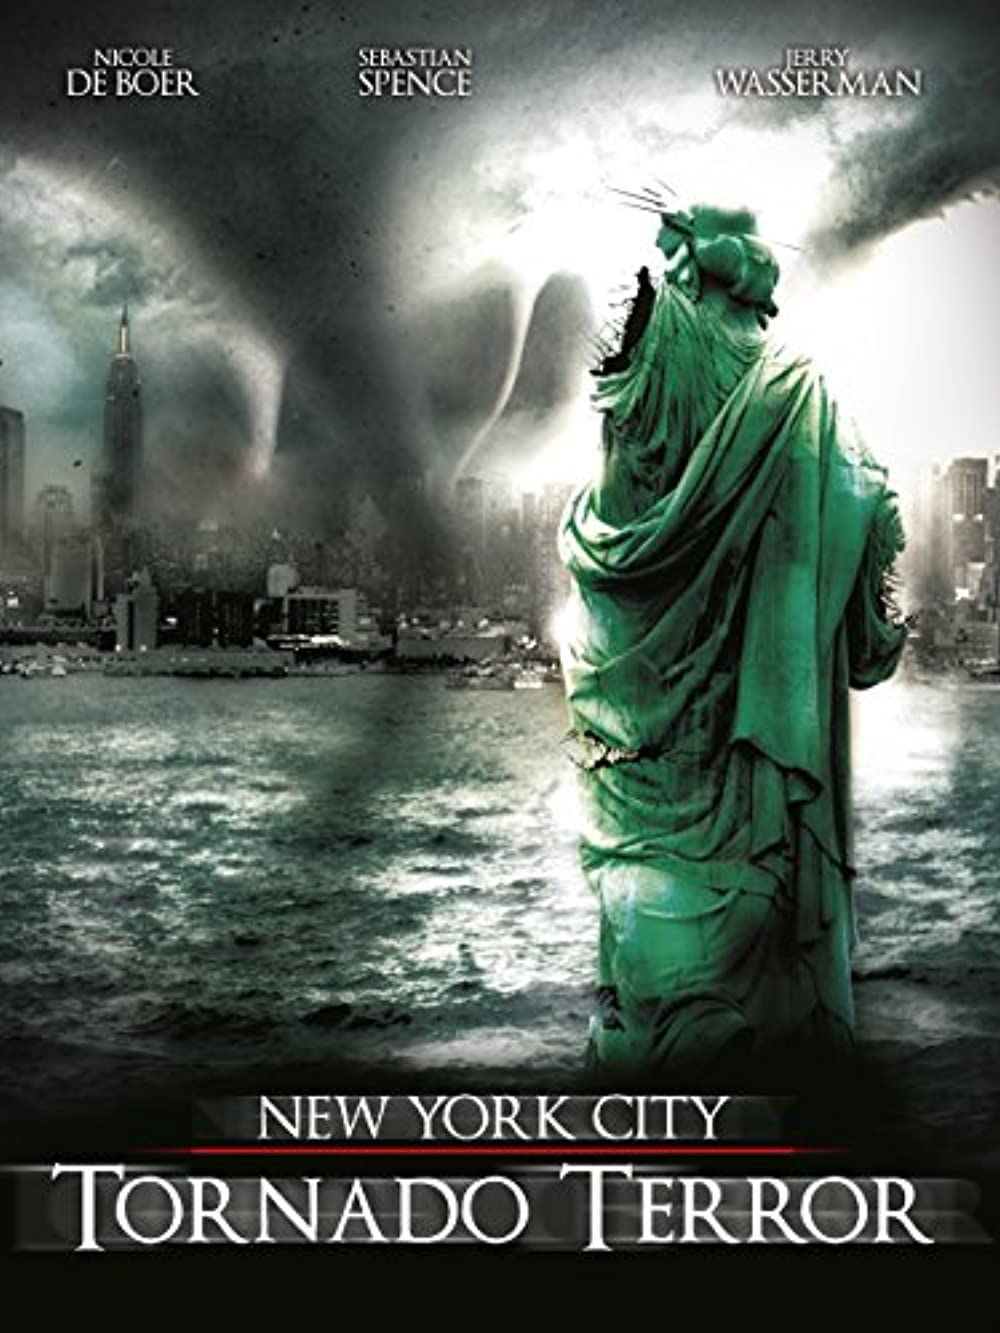 Download NYC: Tornado Terror Movie | Nyc: Tornado Terror Movie Review